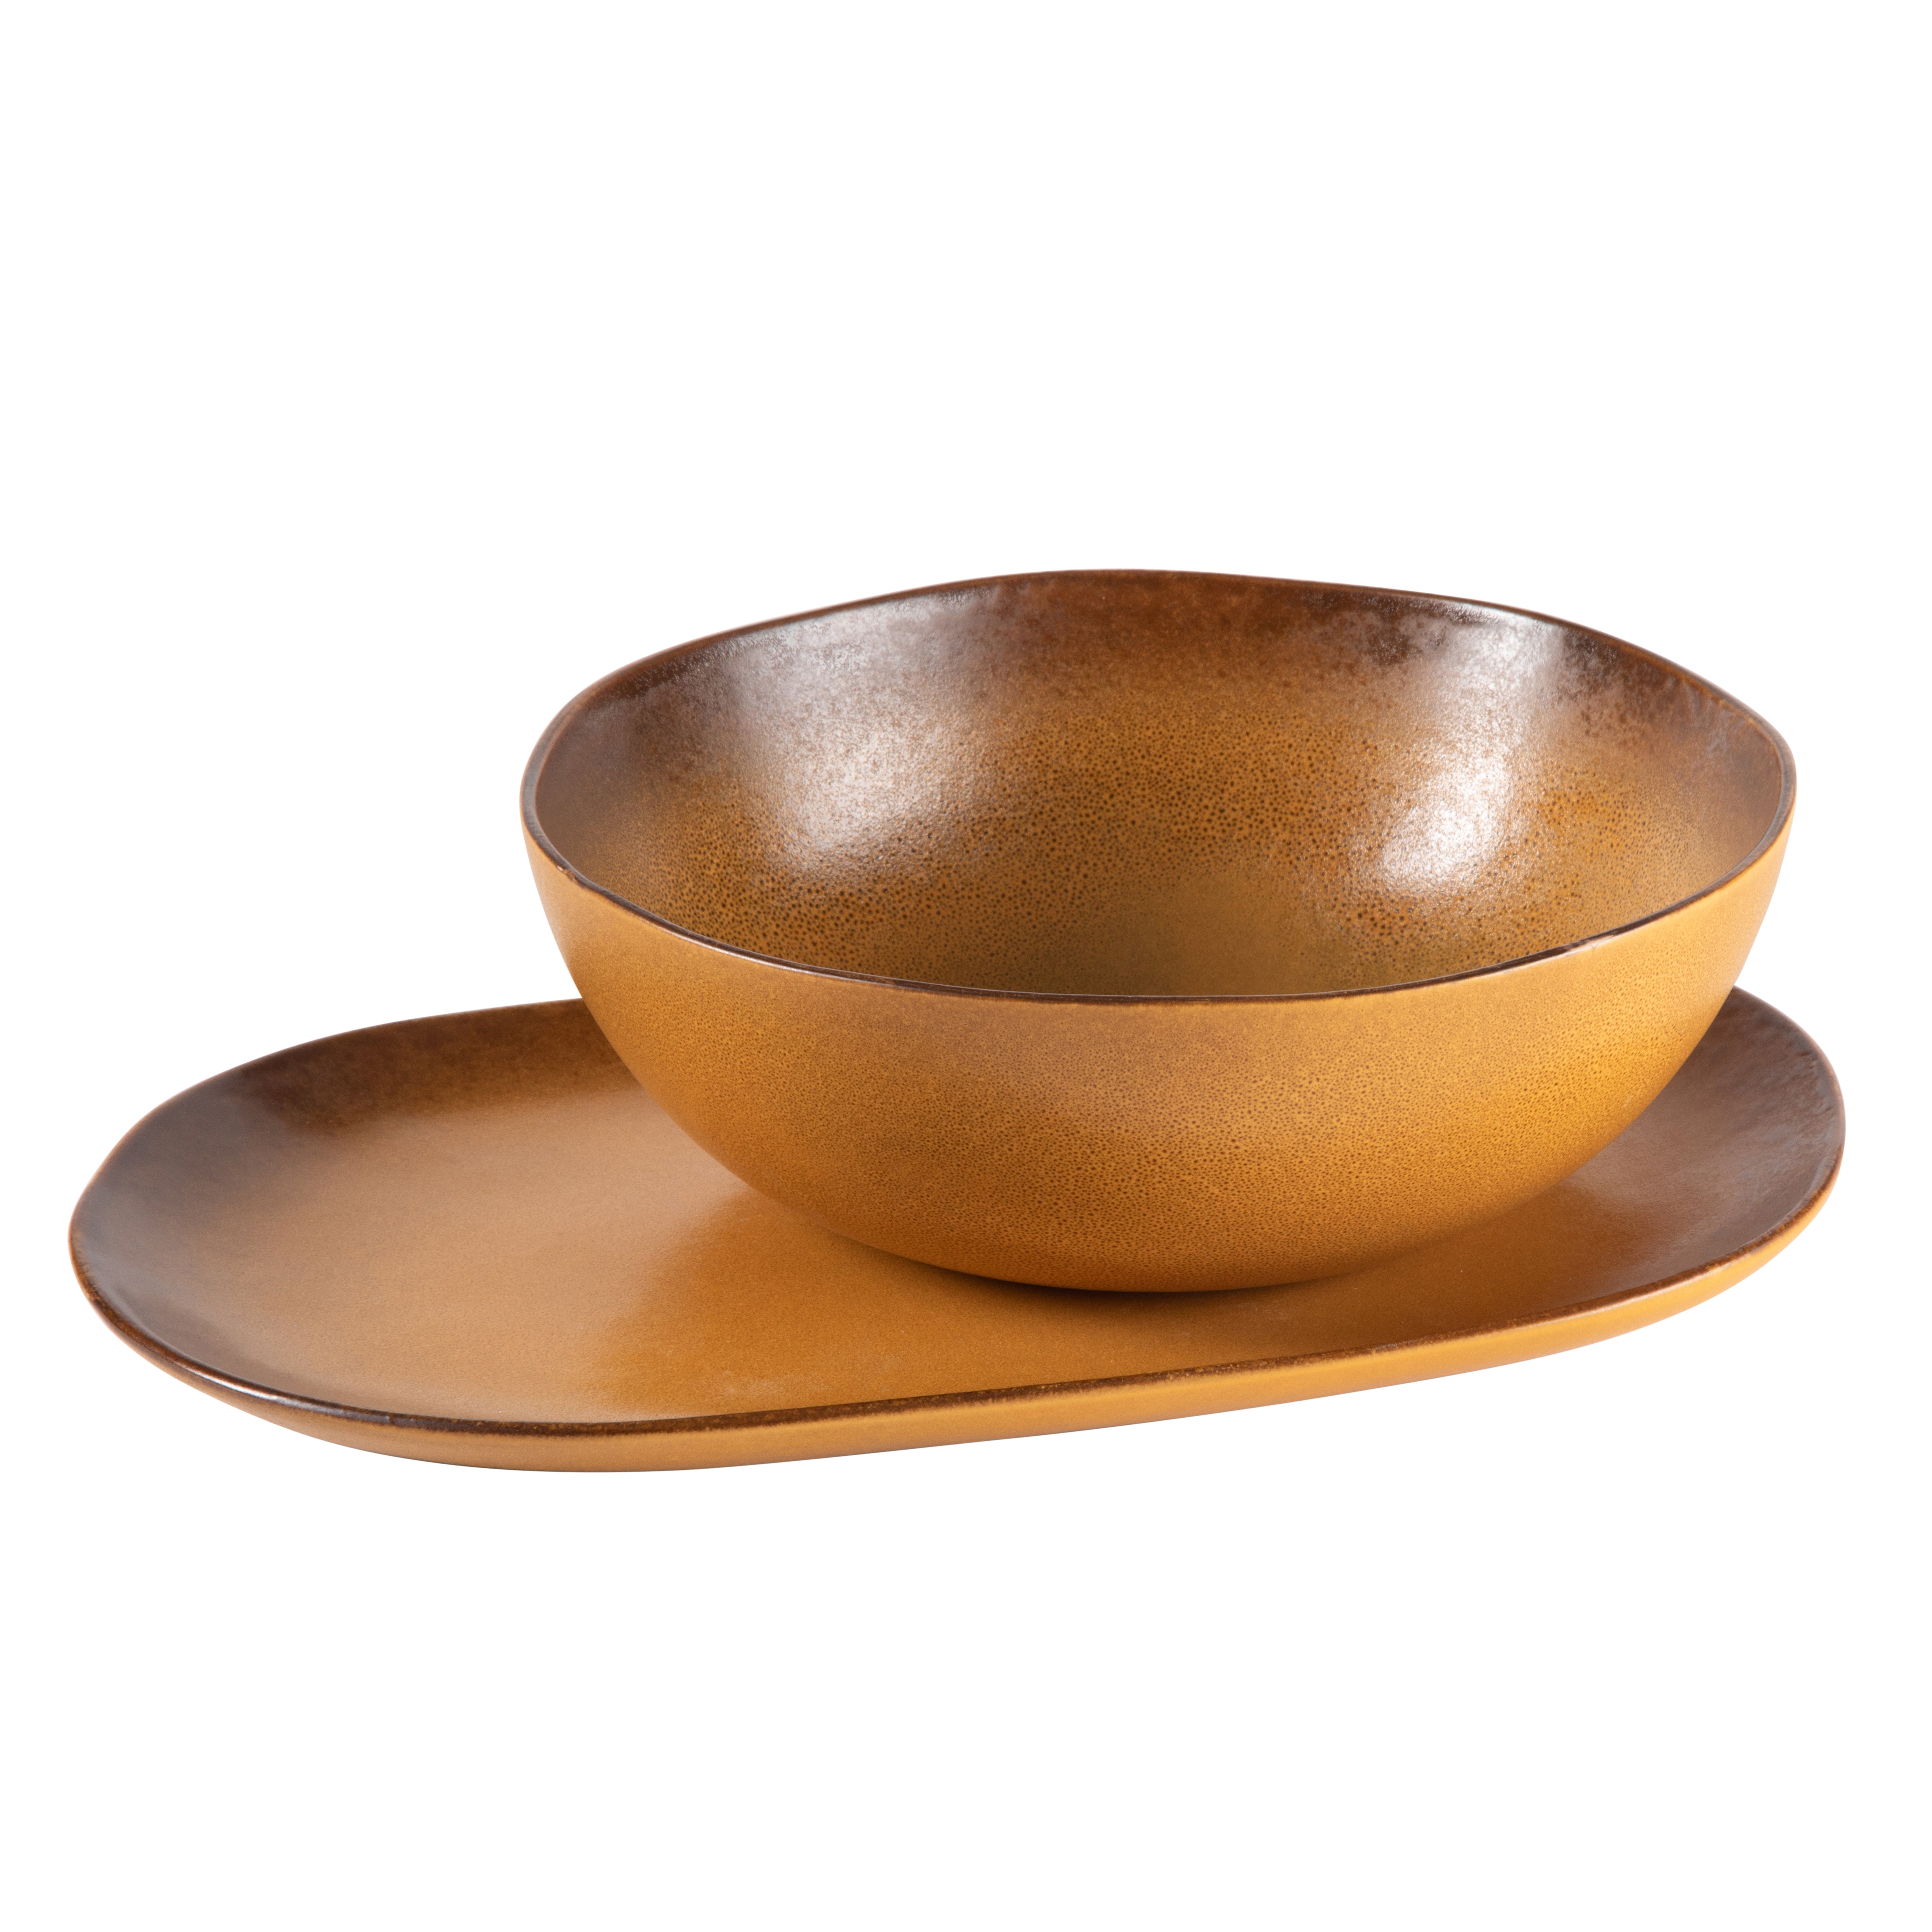 Set of Three Copper Mixing Bowls - Magnolia